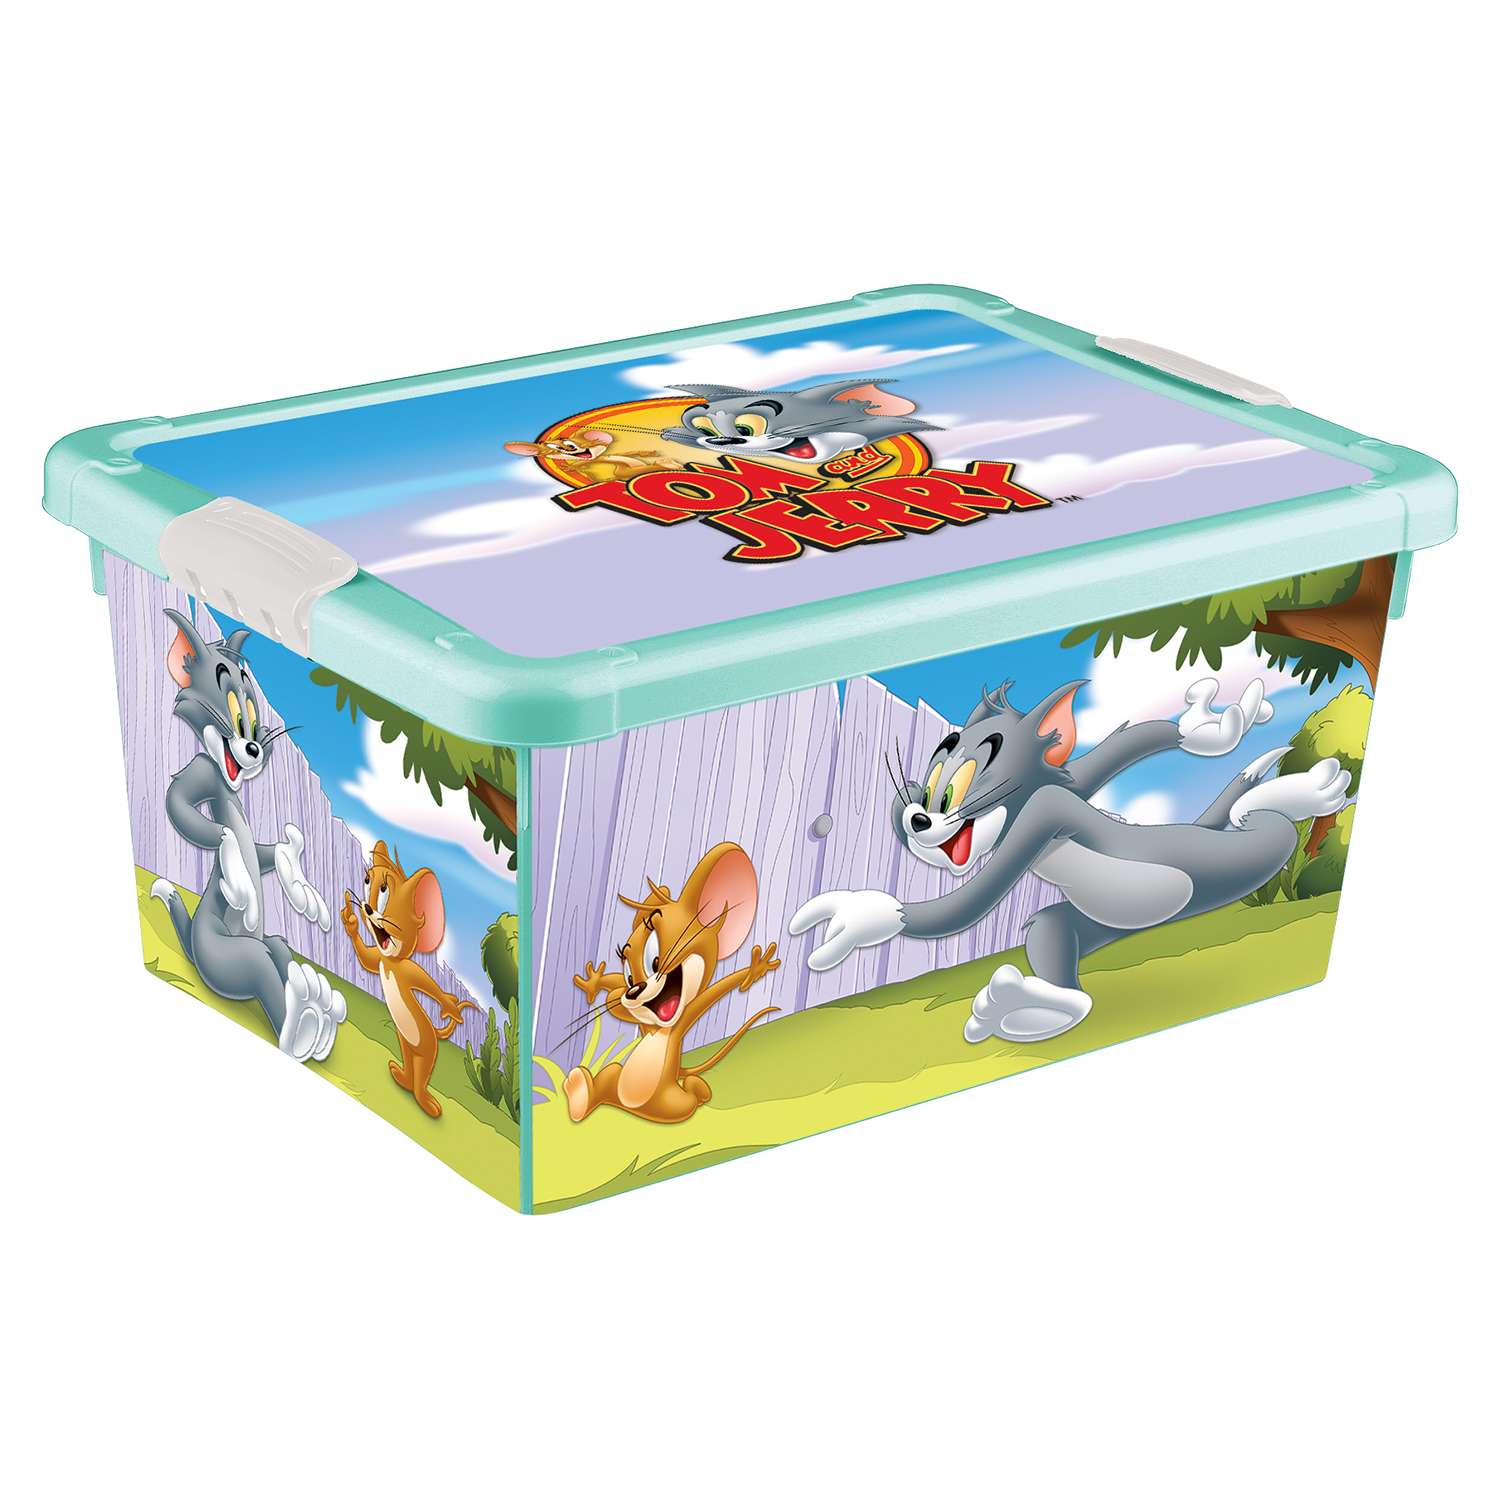 Ящик Пластишка Tom and Jerry универсальный с аппликацией Бирюзовый - фото 1